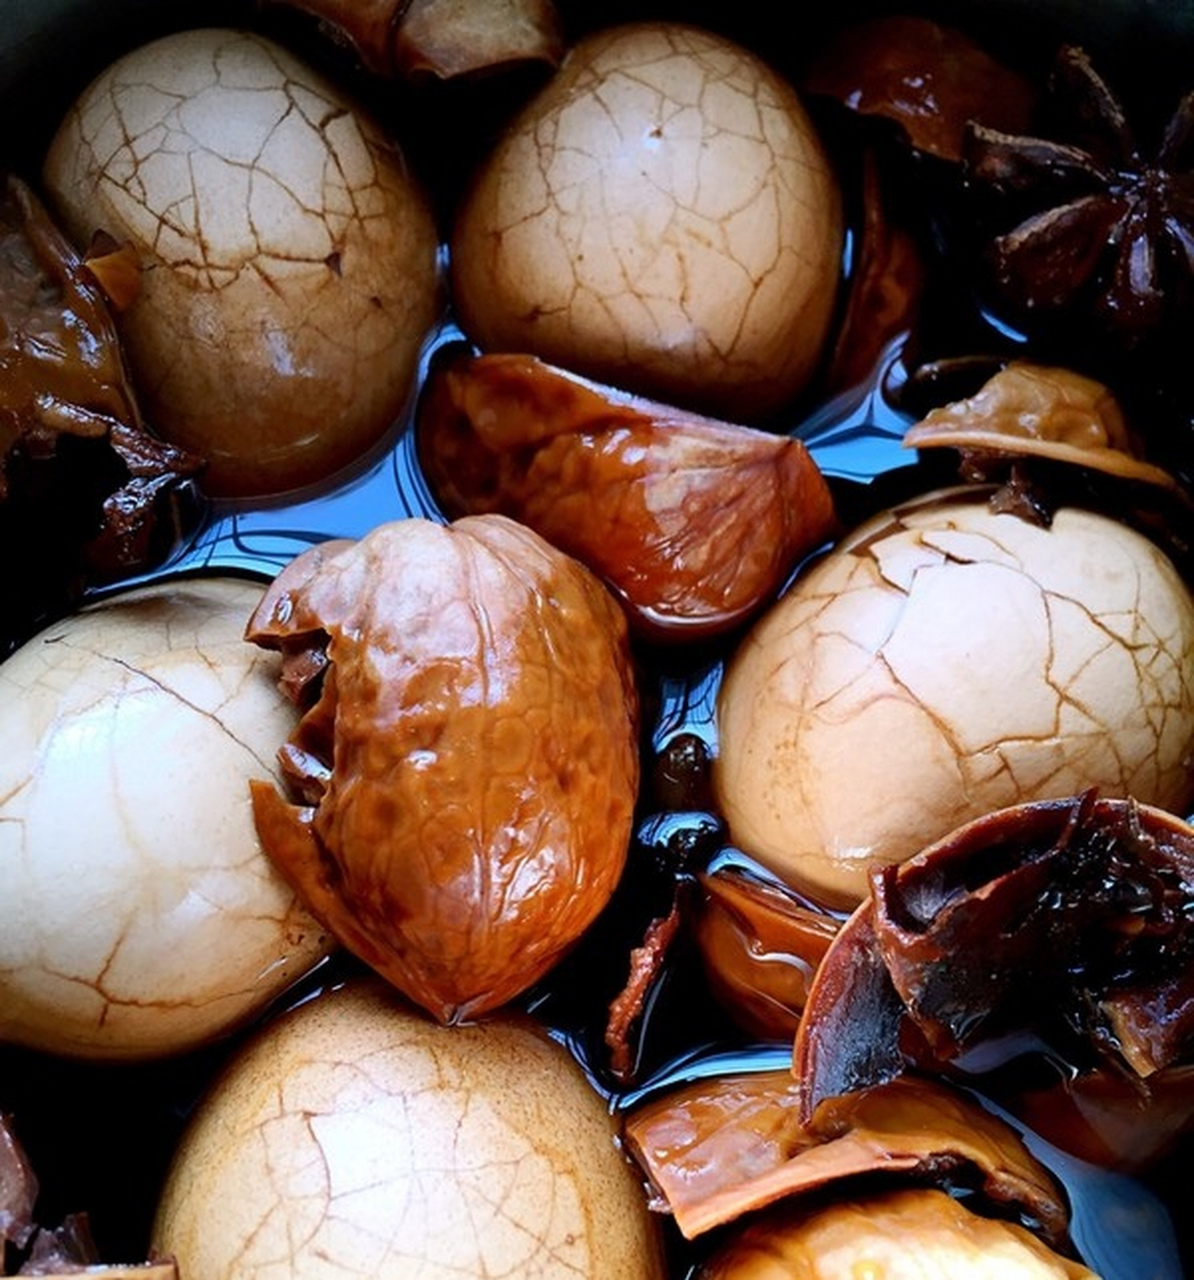 核桃壳煮鸡蛋具有益气养血,补肾健脾的功效